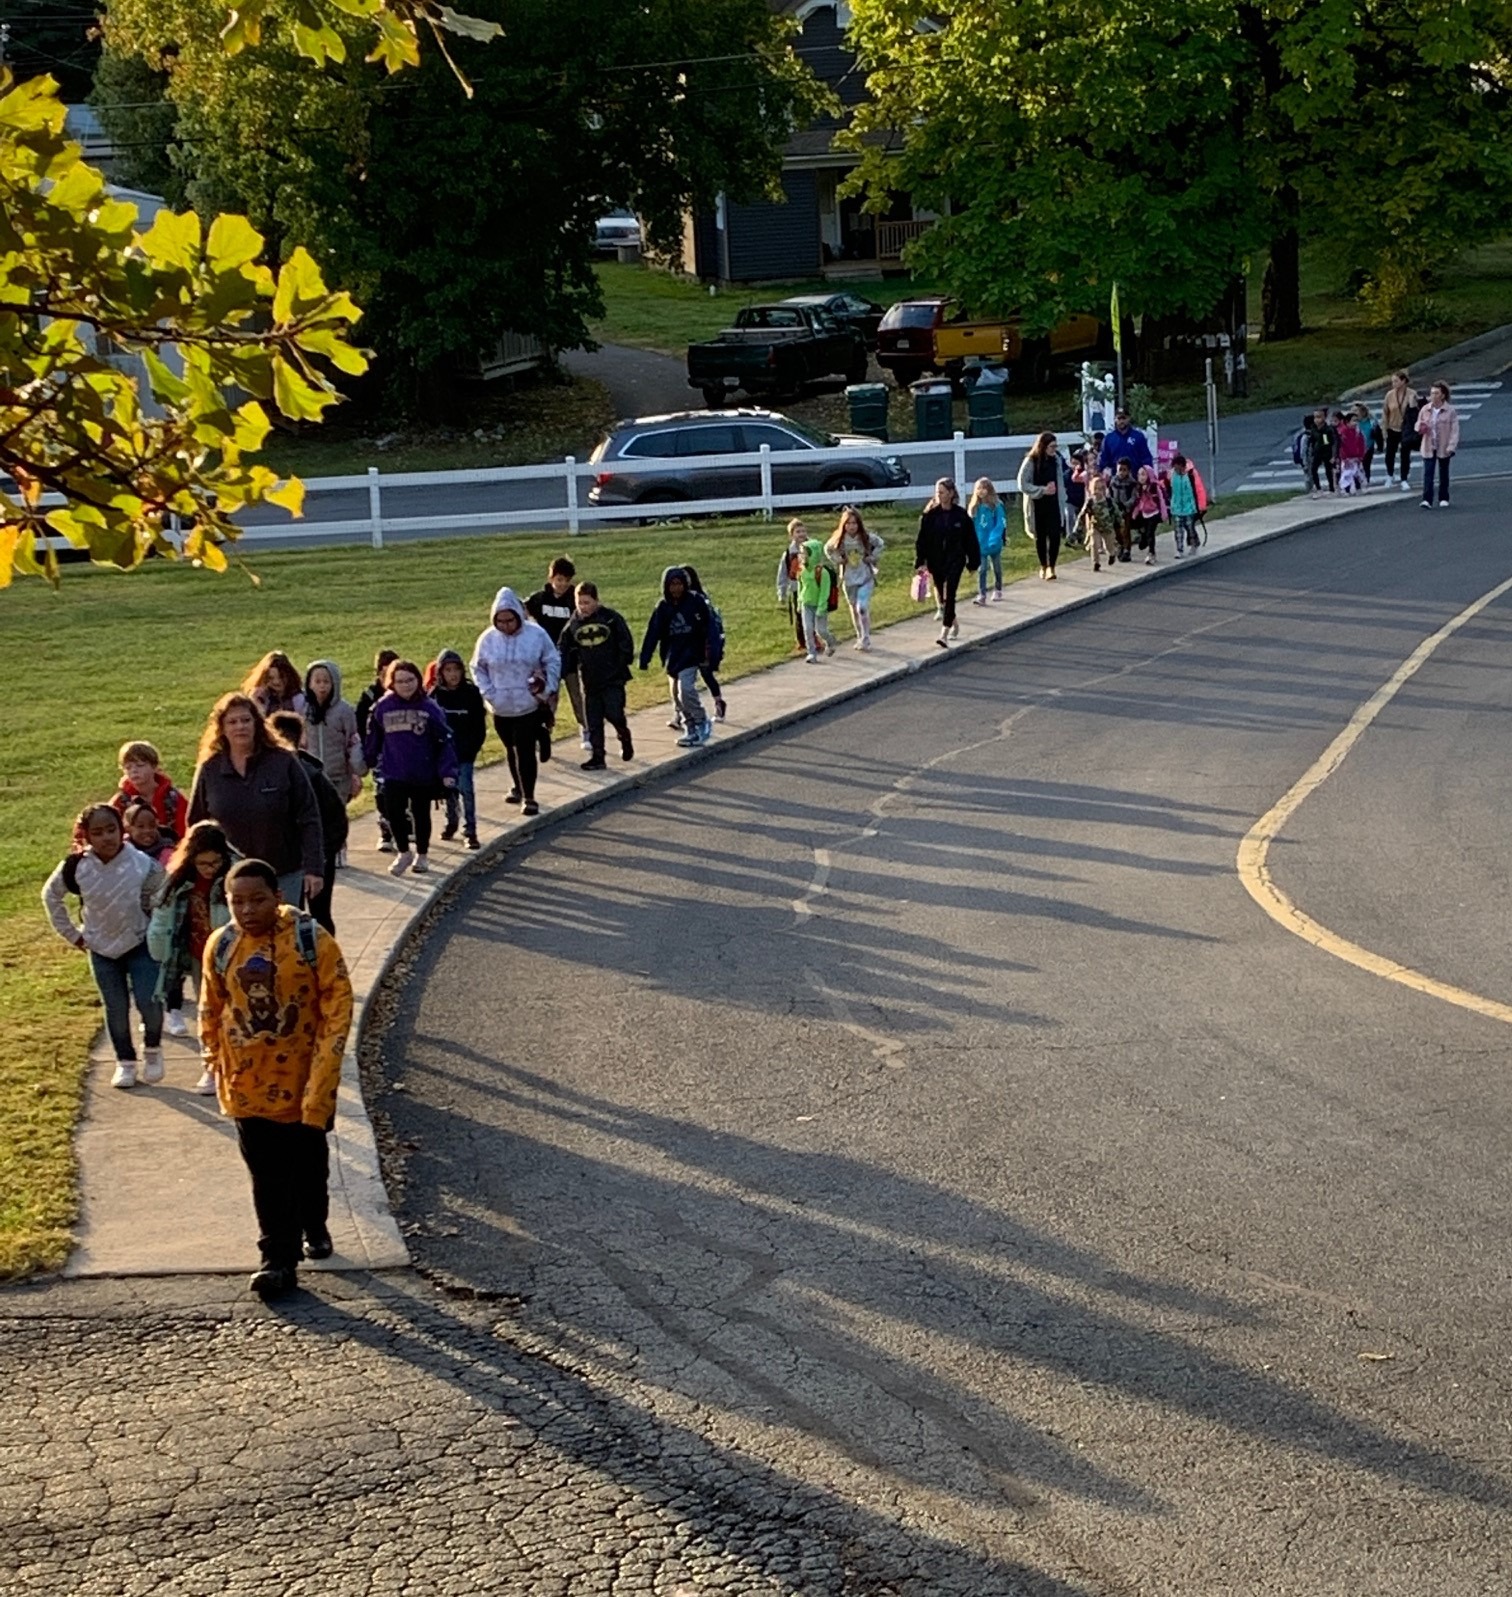 A line of children walk along a sidewalk together.